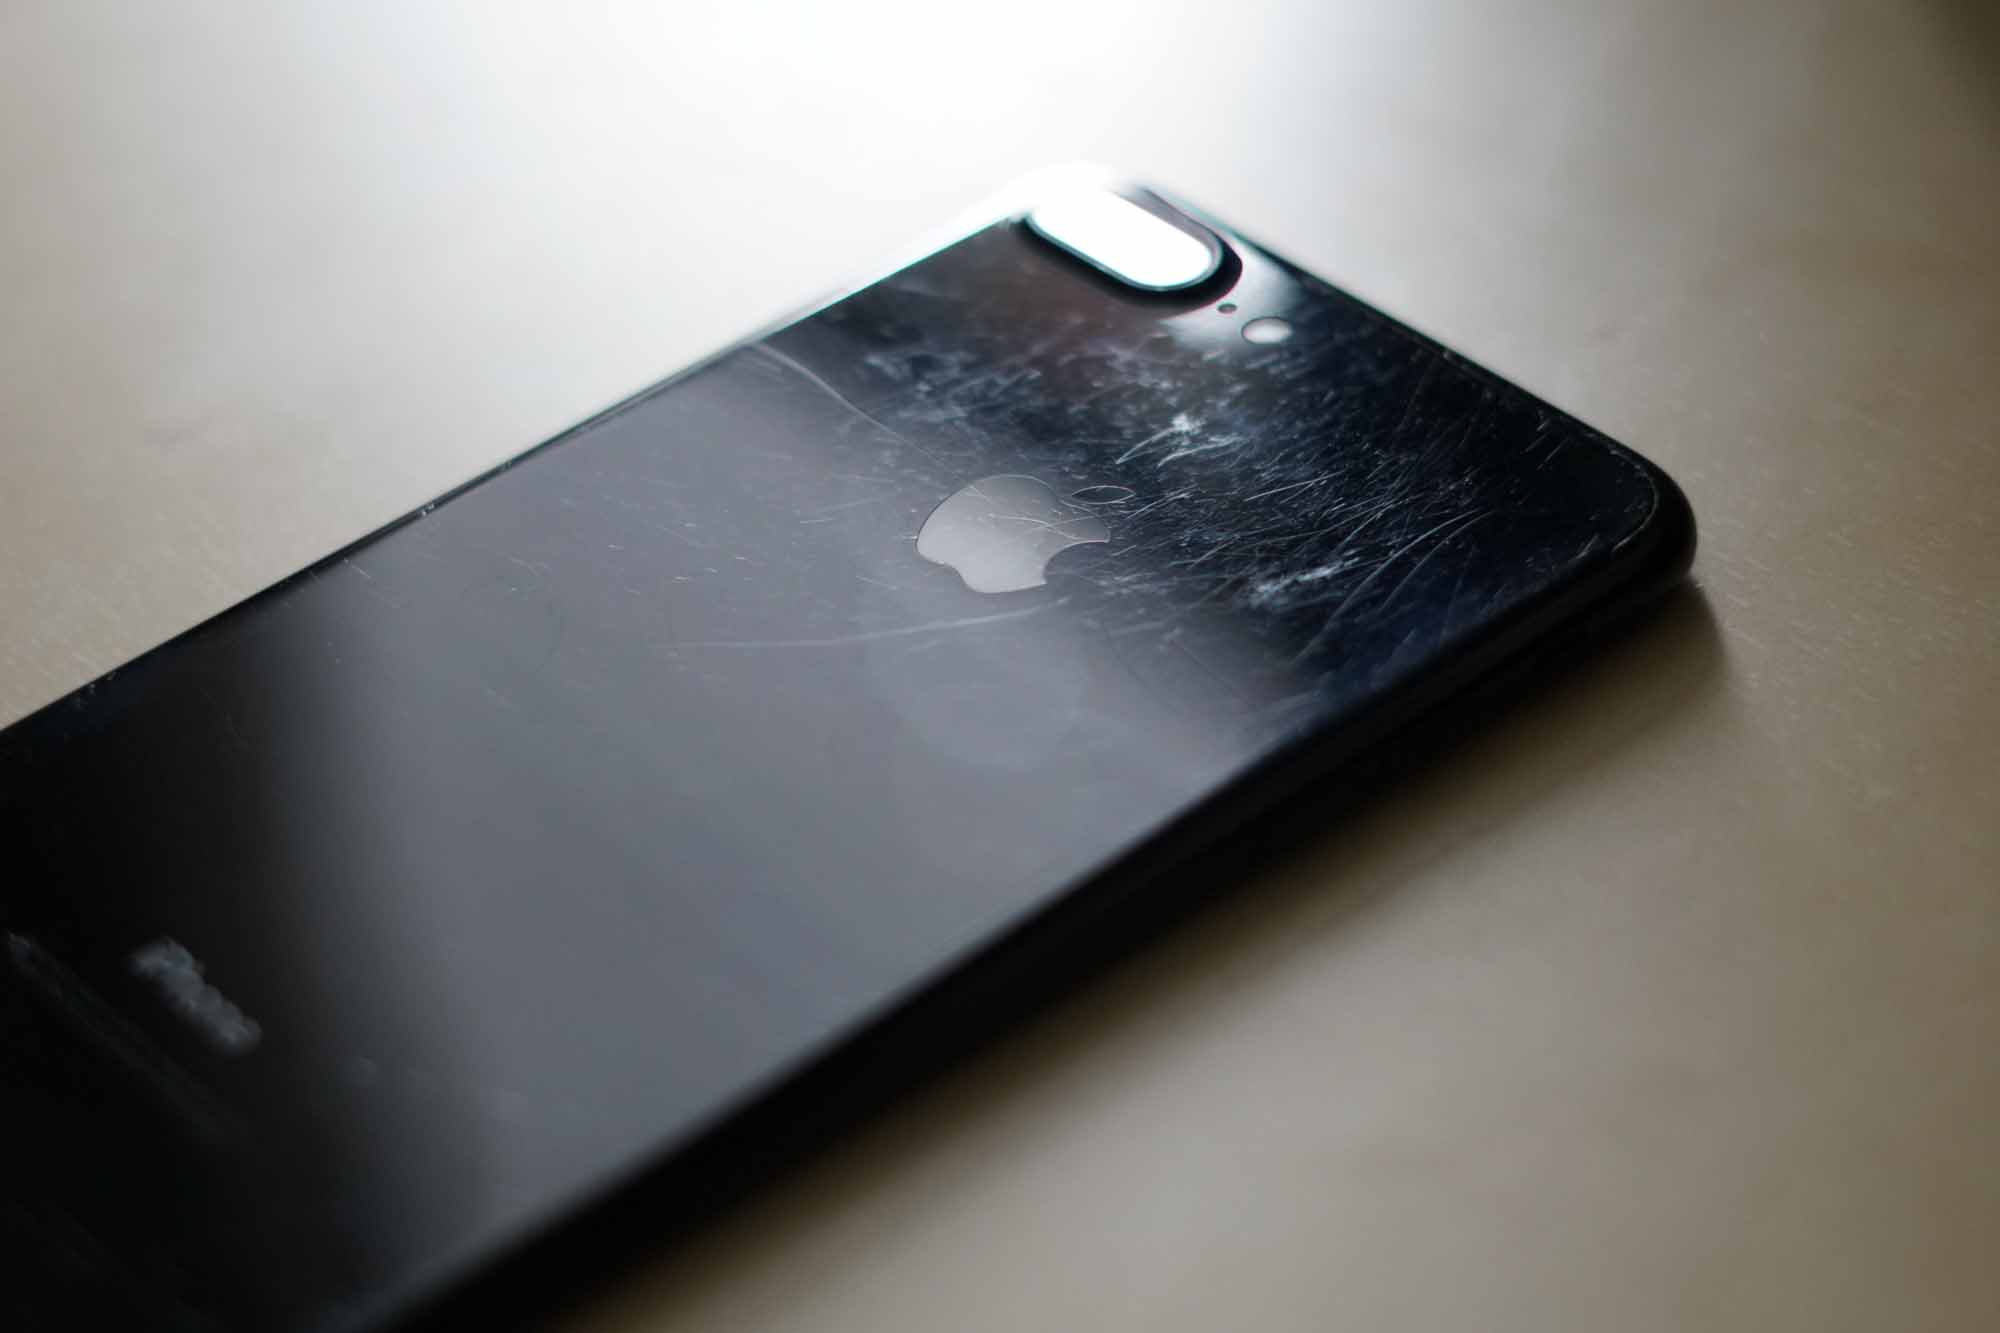 На новых изображениях показан прототип iPhone X в черном цвете